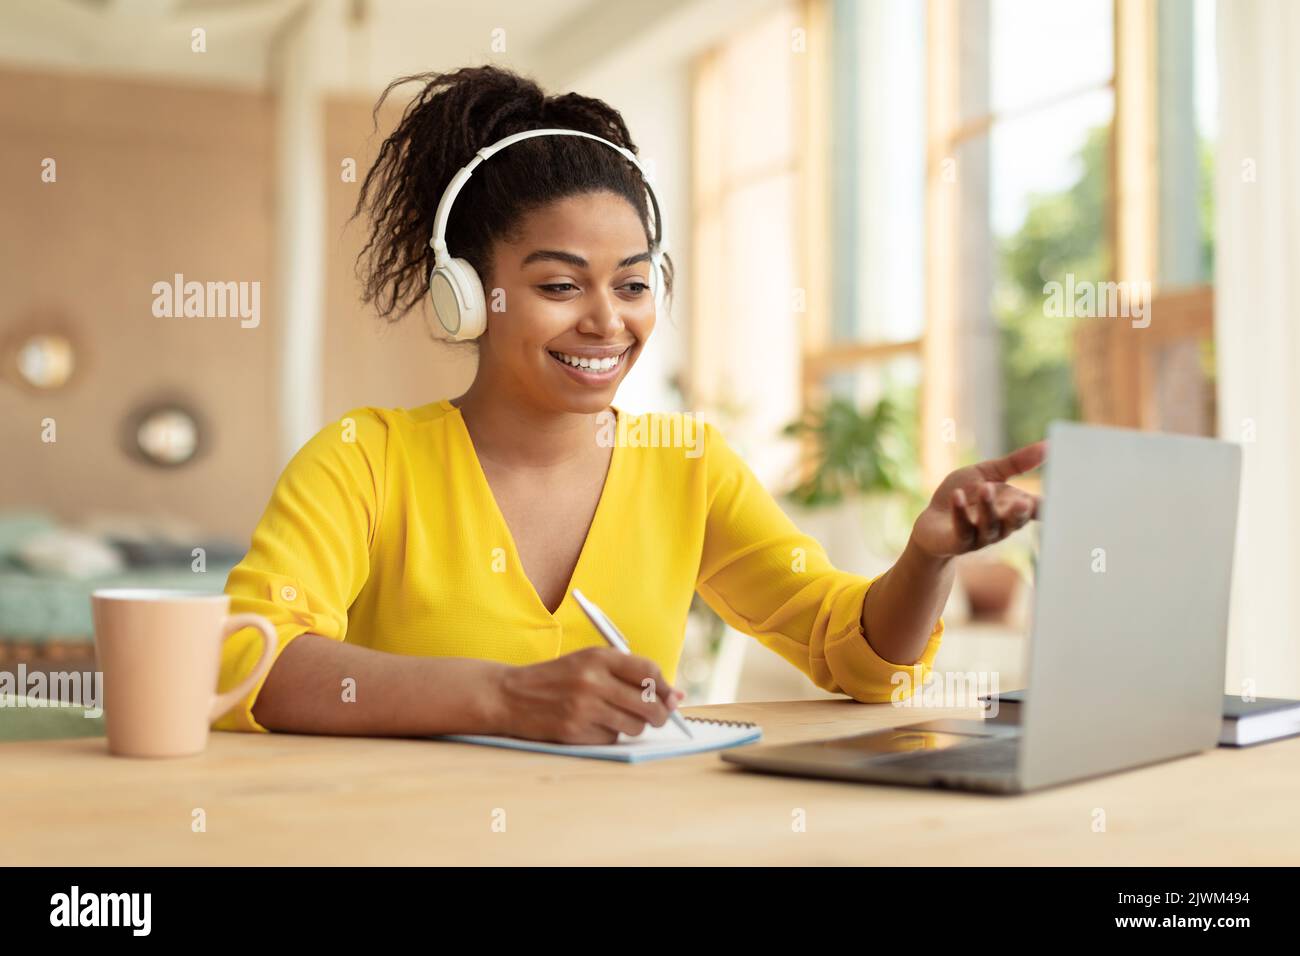 Concept de formation en ligne. Bonne étudiante noire dans un casque avec appel vidéo via un ordinateur portable, parler avec un tuteur Banque D'Images